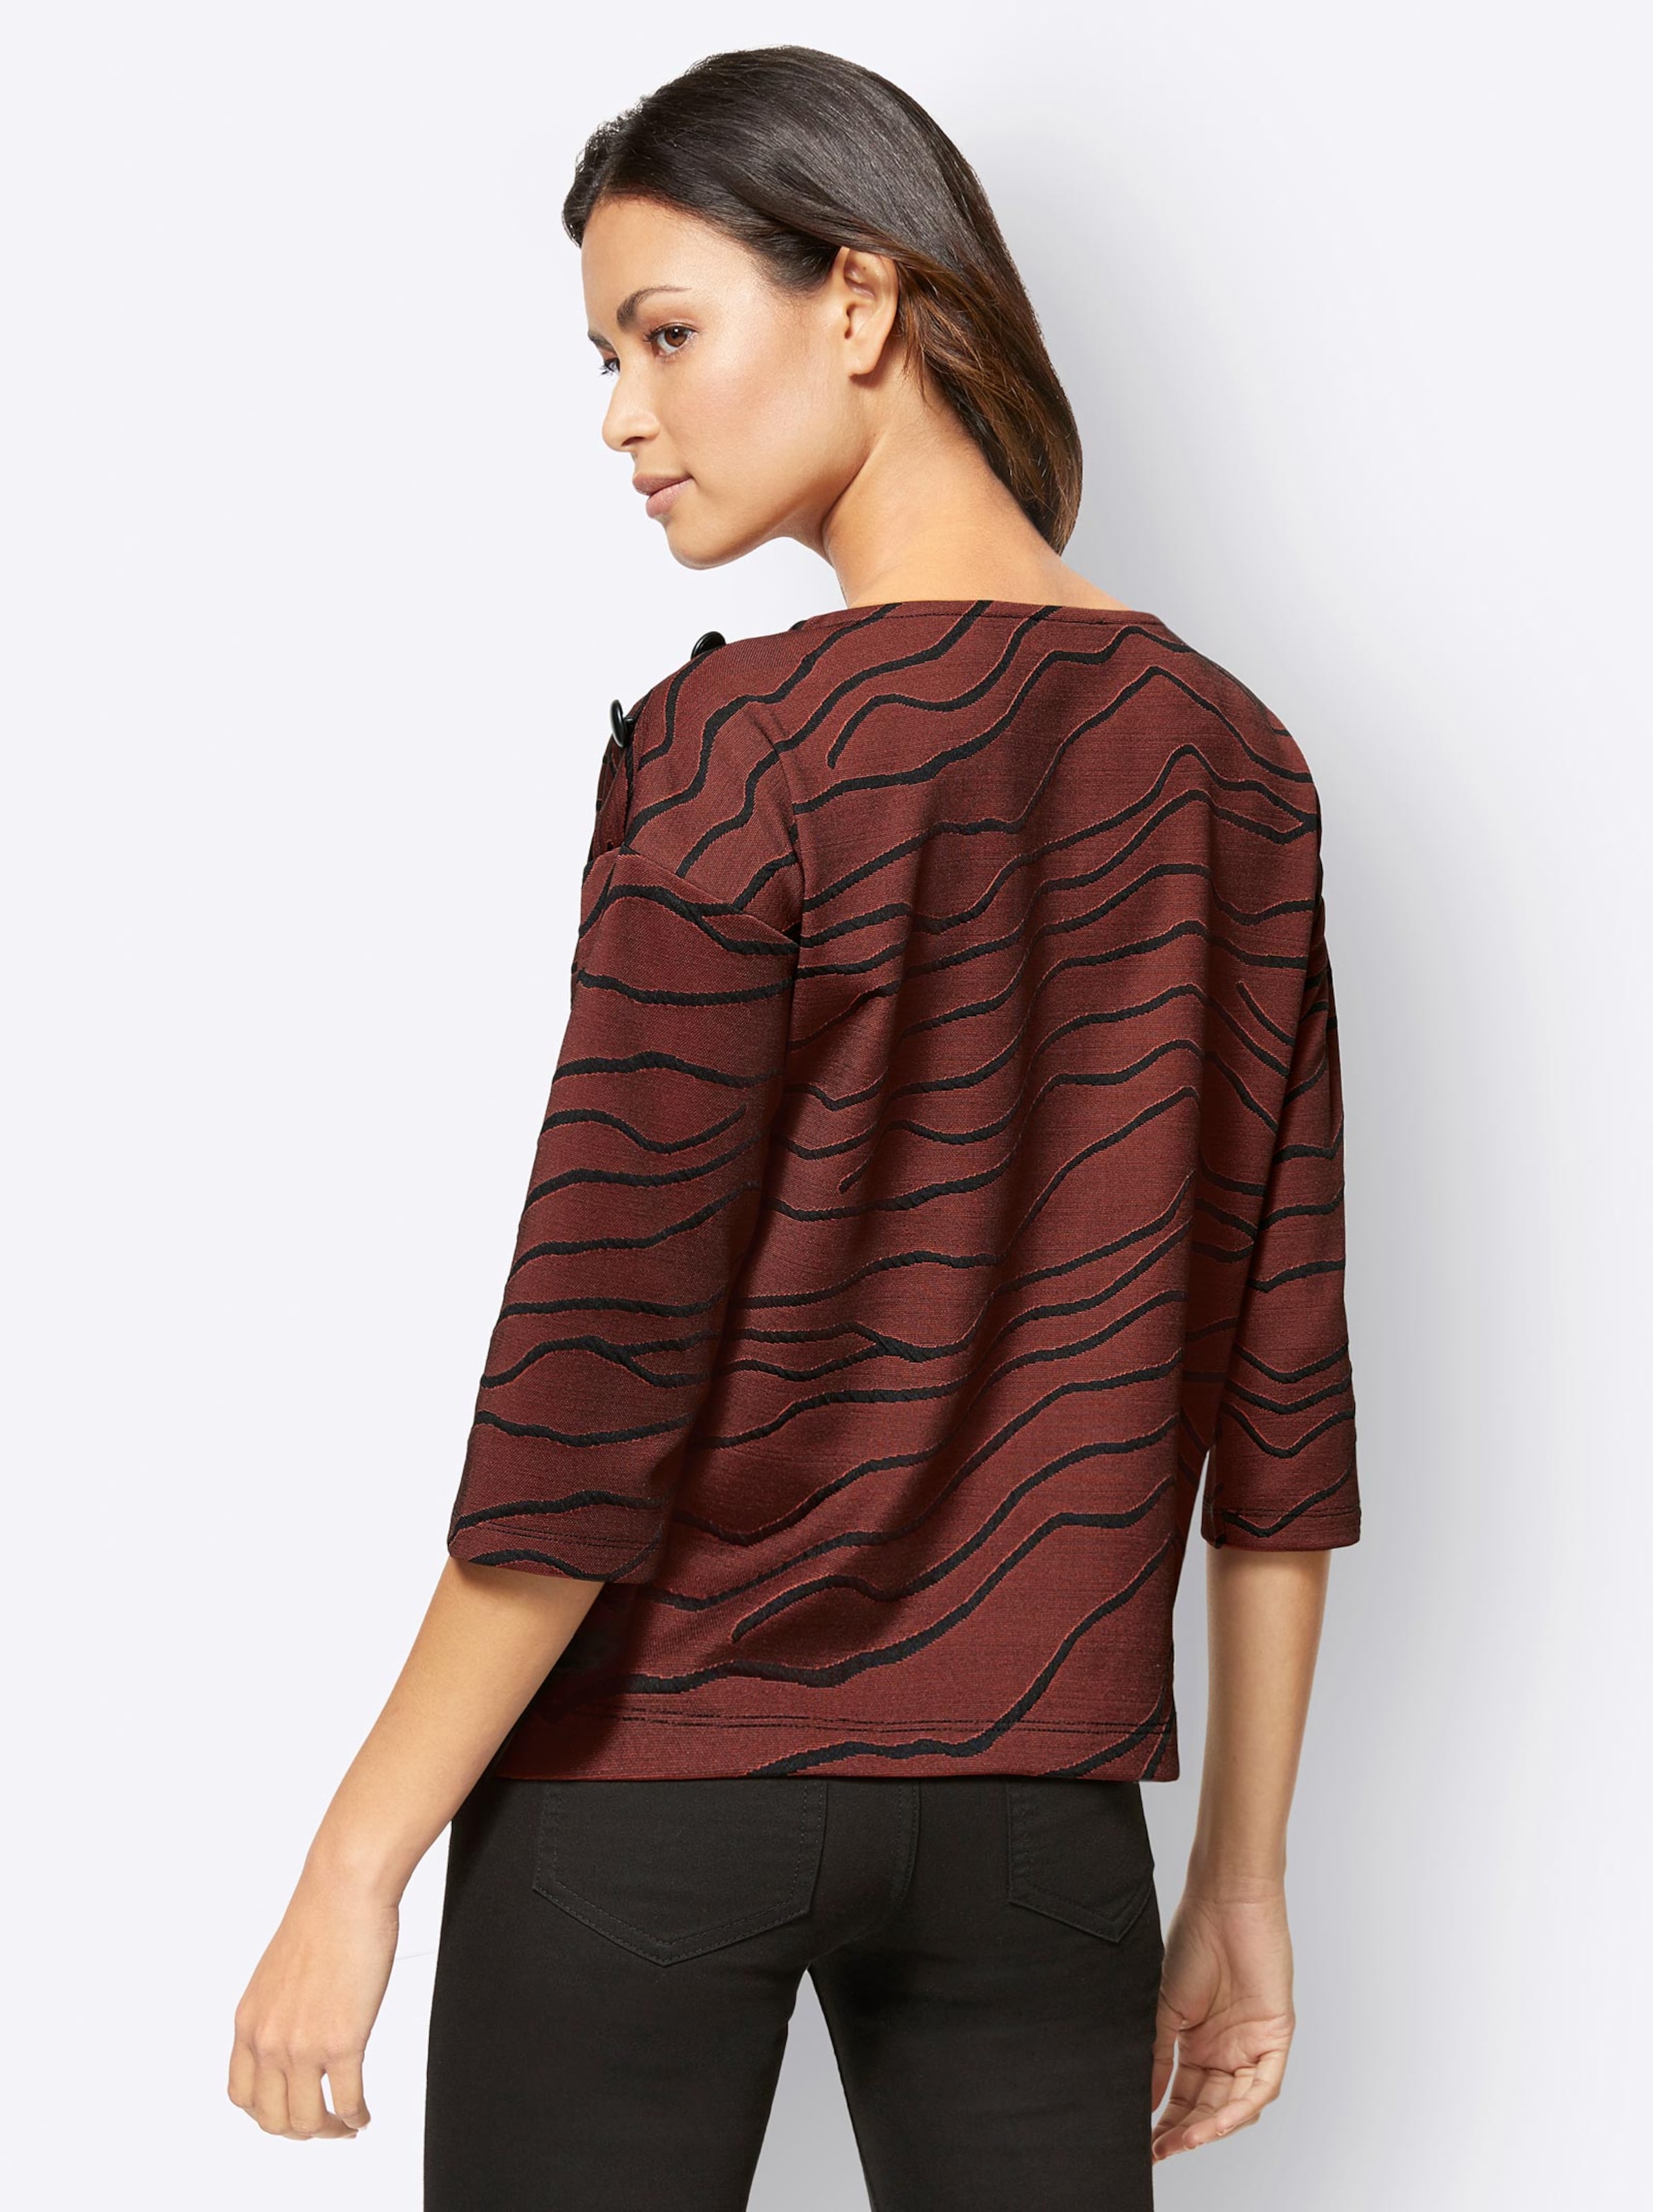 Damenmode Shirts 3/4-Arm-Shirt in rotbraun-schwarz-bedruckt 